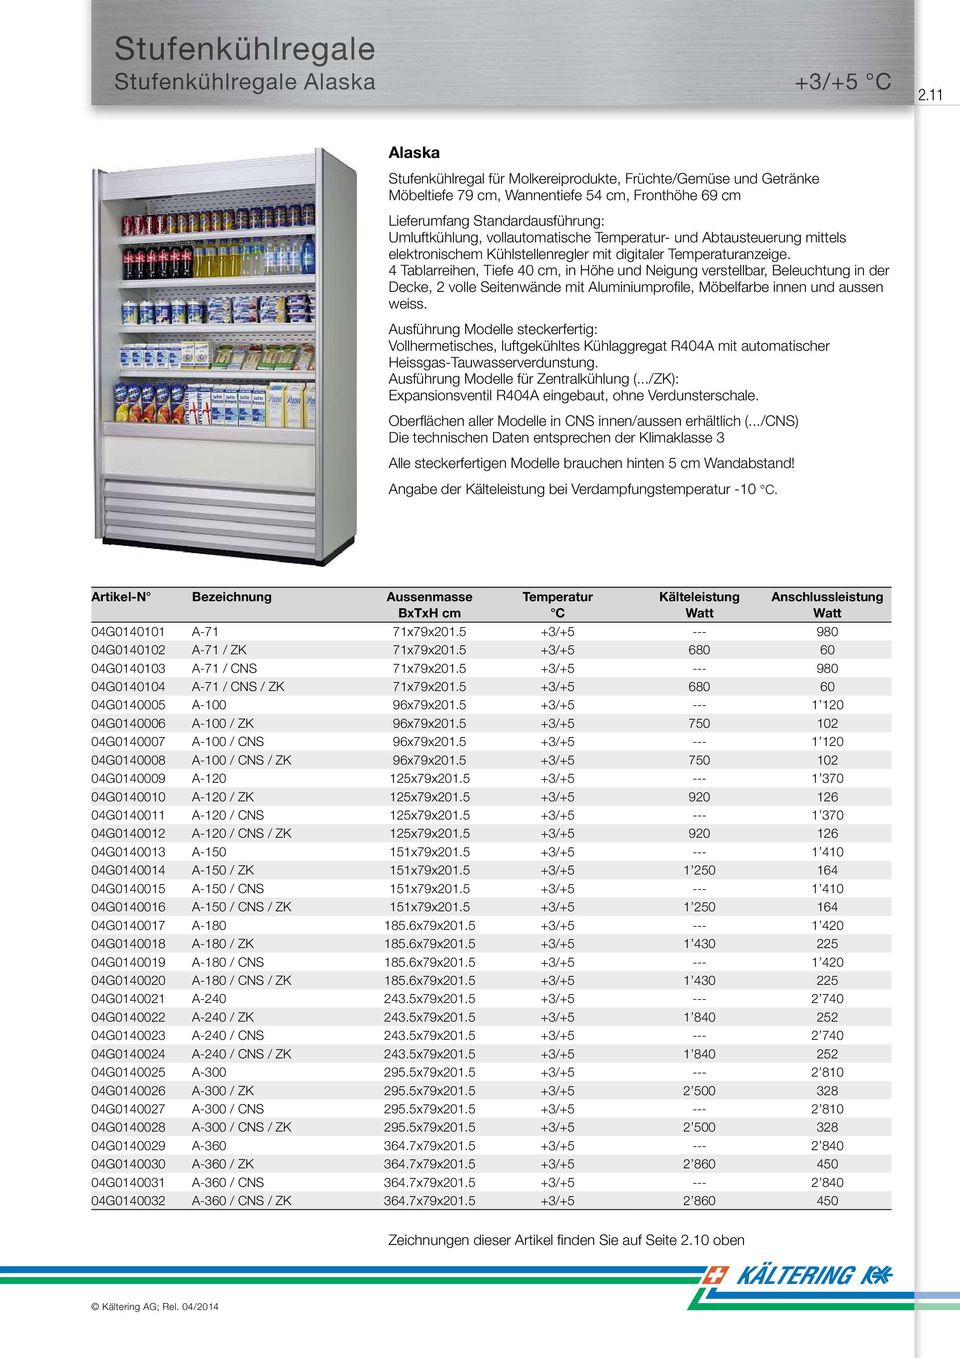 Temperatur- und Abtausteuerung mittels elektronischem Kühlstellenregler mit digitaler Temperaturanzeige.